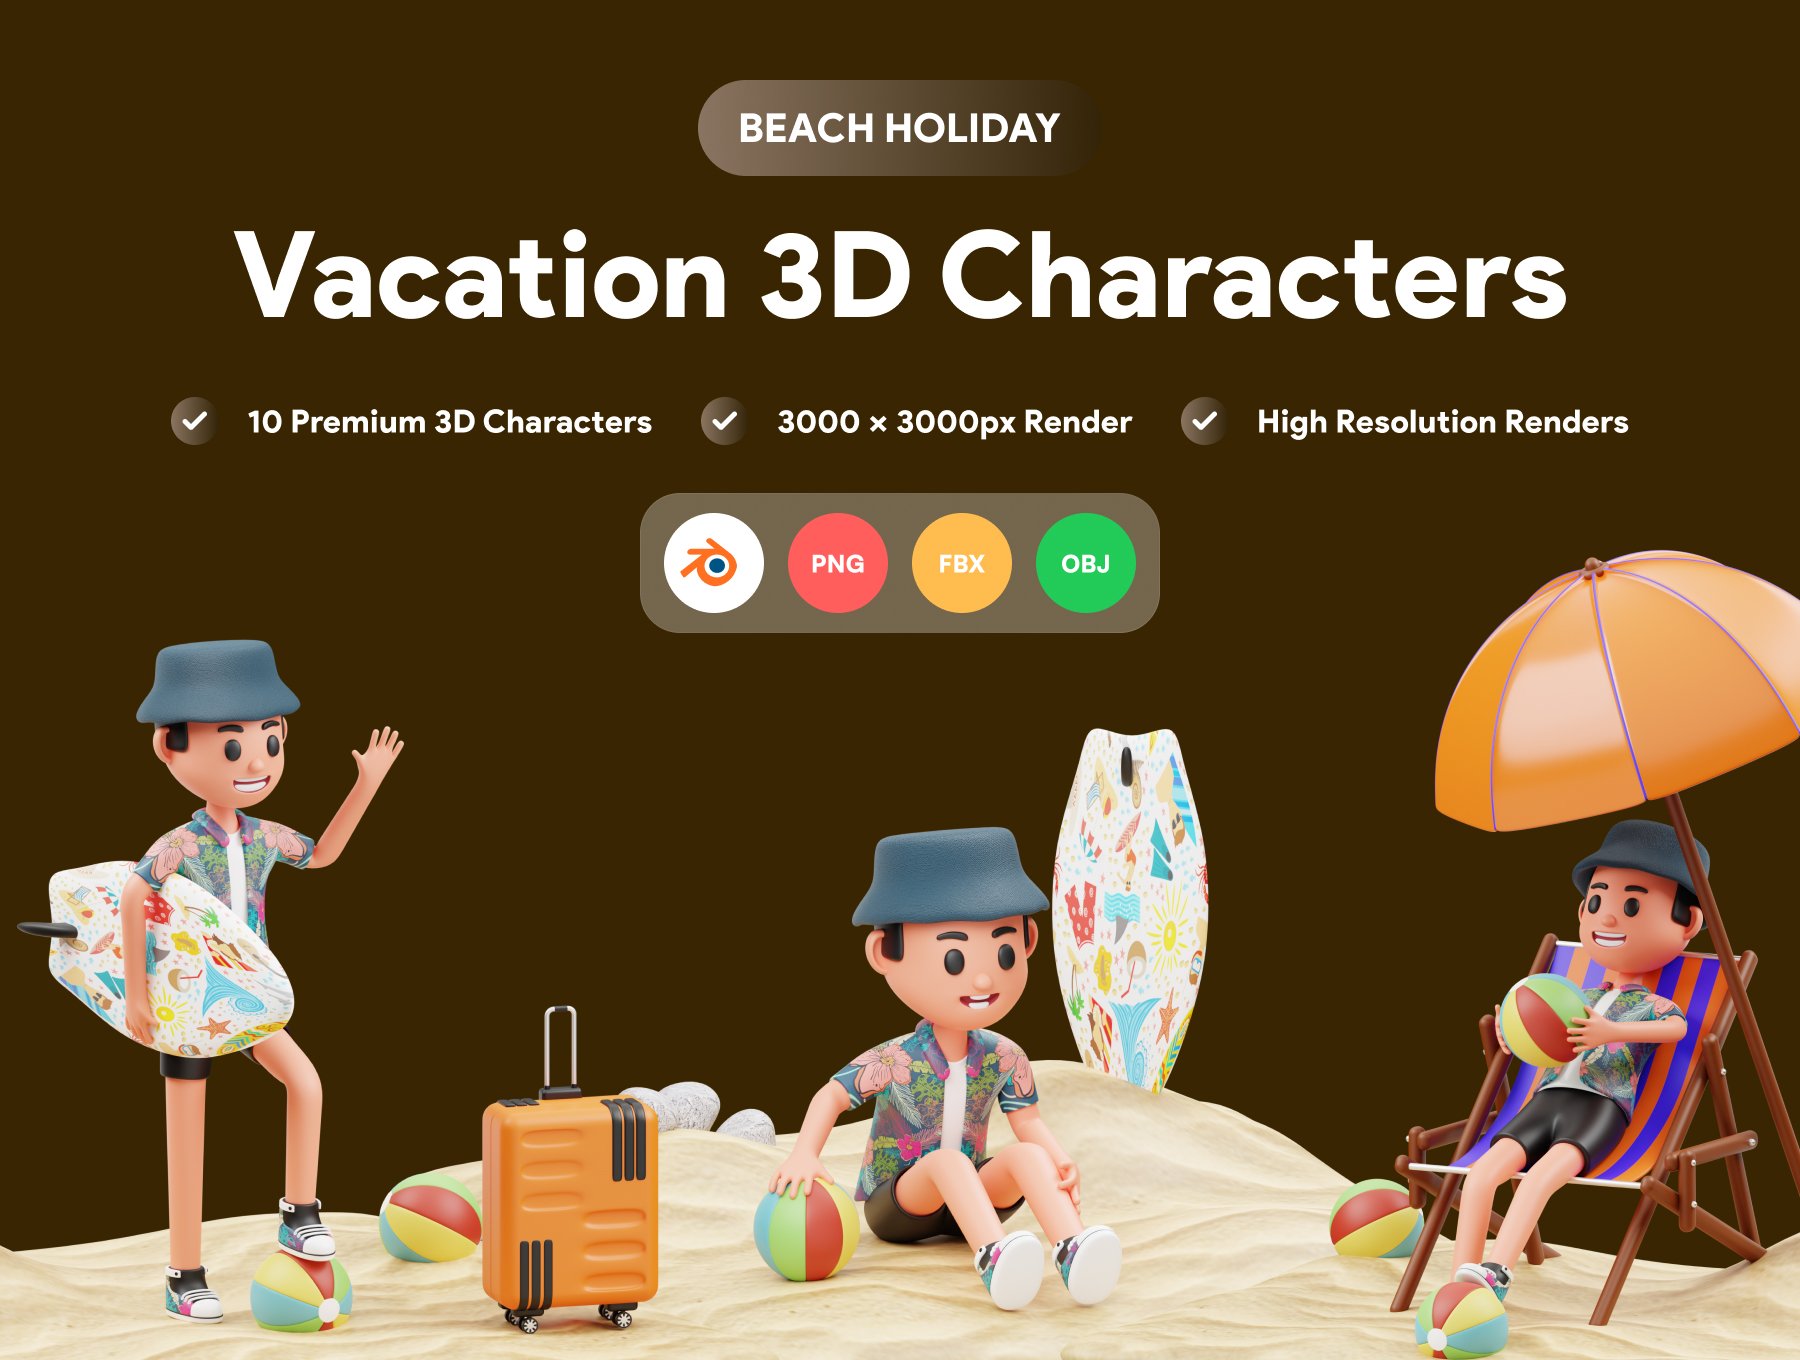 三维渲染假期旅行海滩度假主题卡通人物插画素材 Vacation 3D Character Illustration 图标素材 第1张